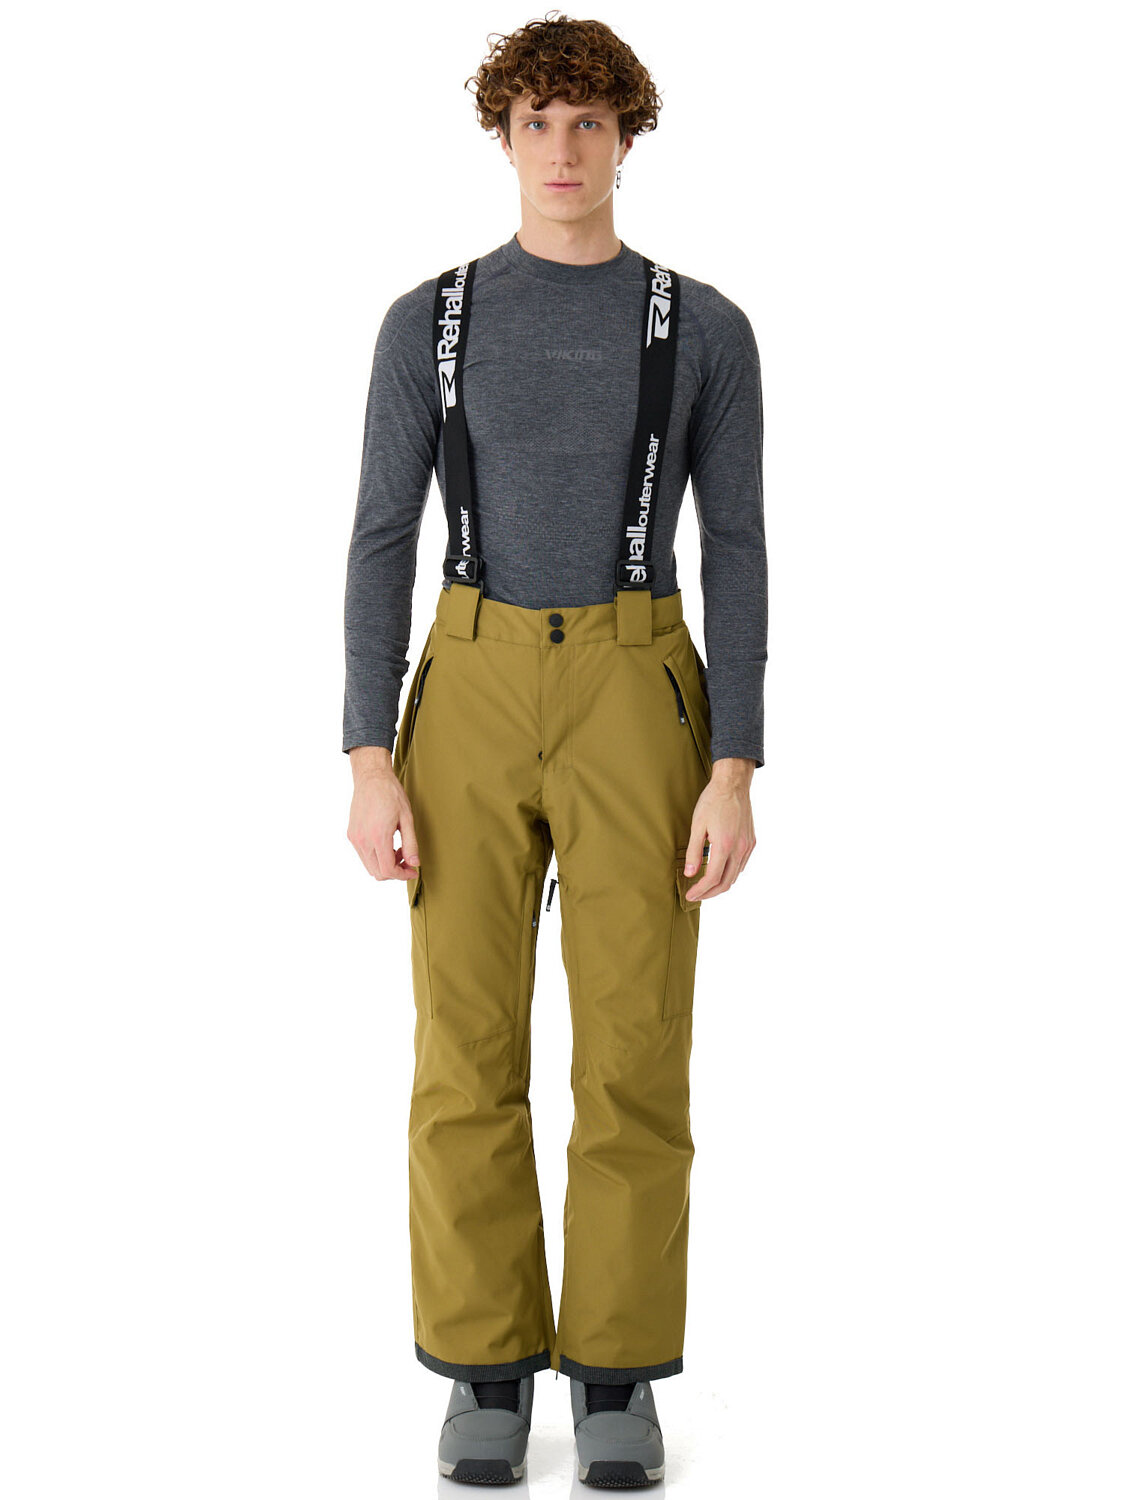 брюки для сноубординга Rehall, карманы, регулировка объема талии, утепленные